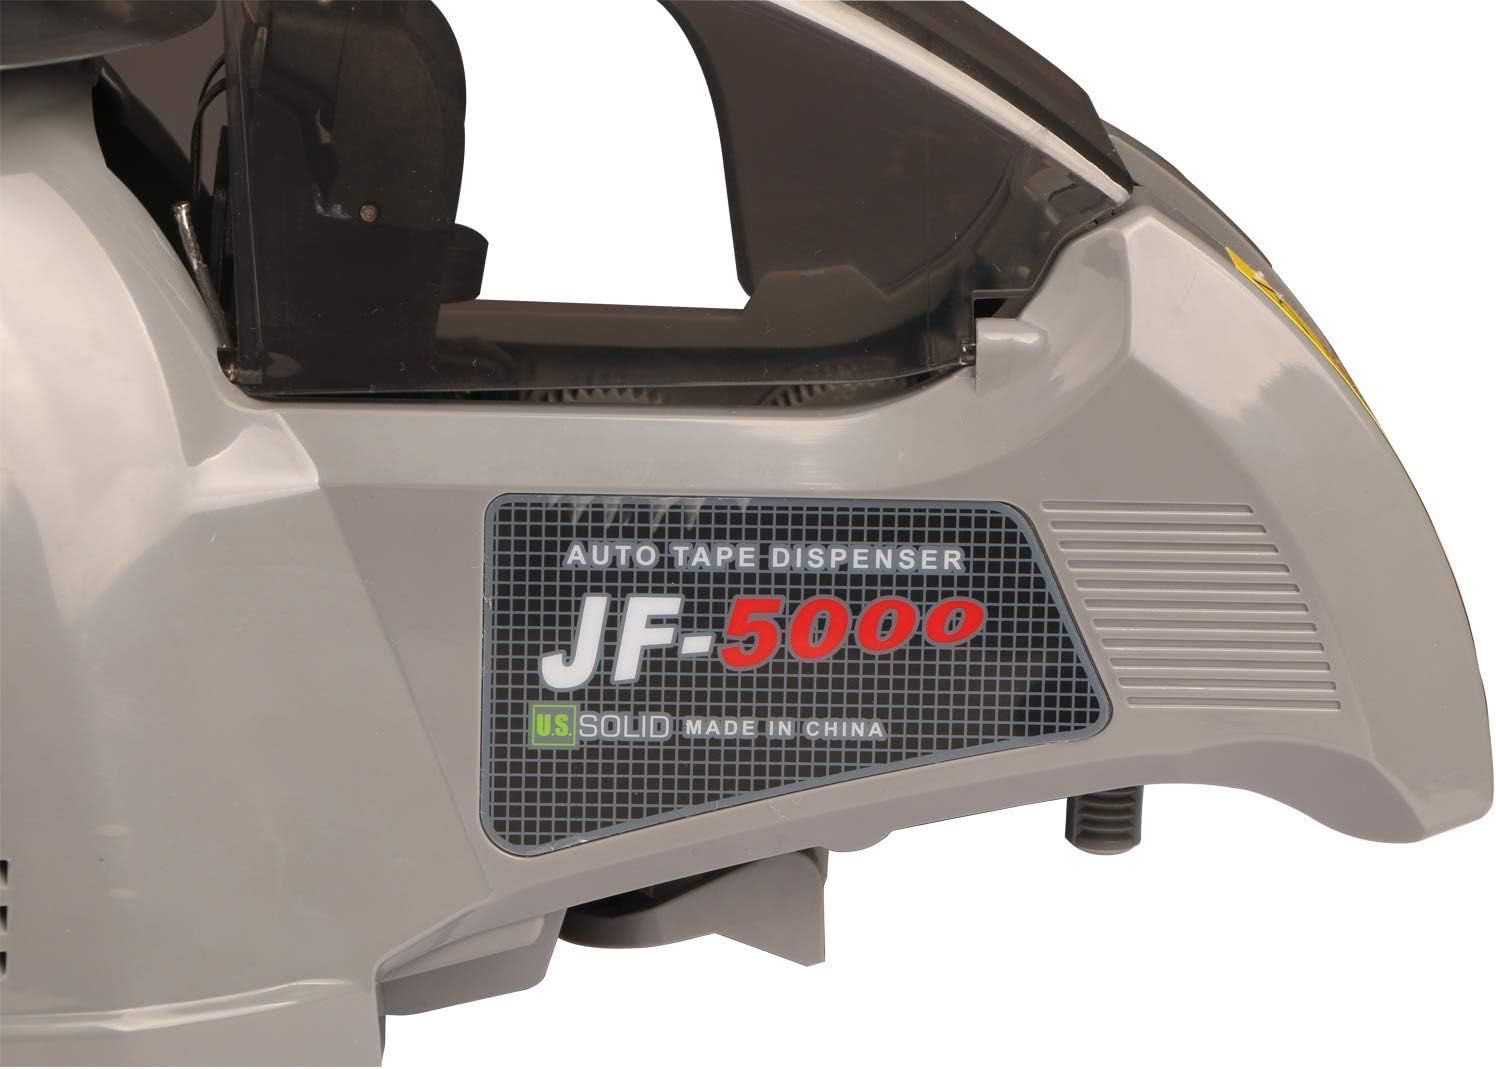 U.S.SOLID Automatyczny dozownik taśmy klejącej JF-5000